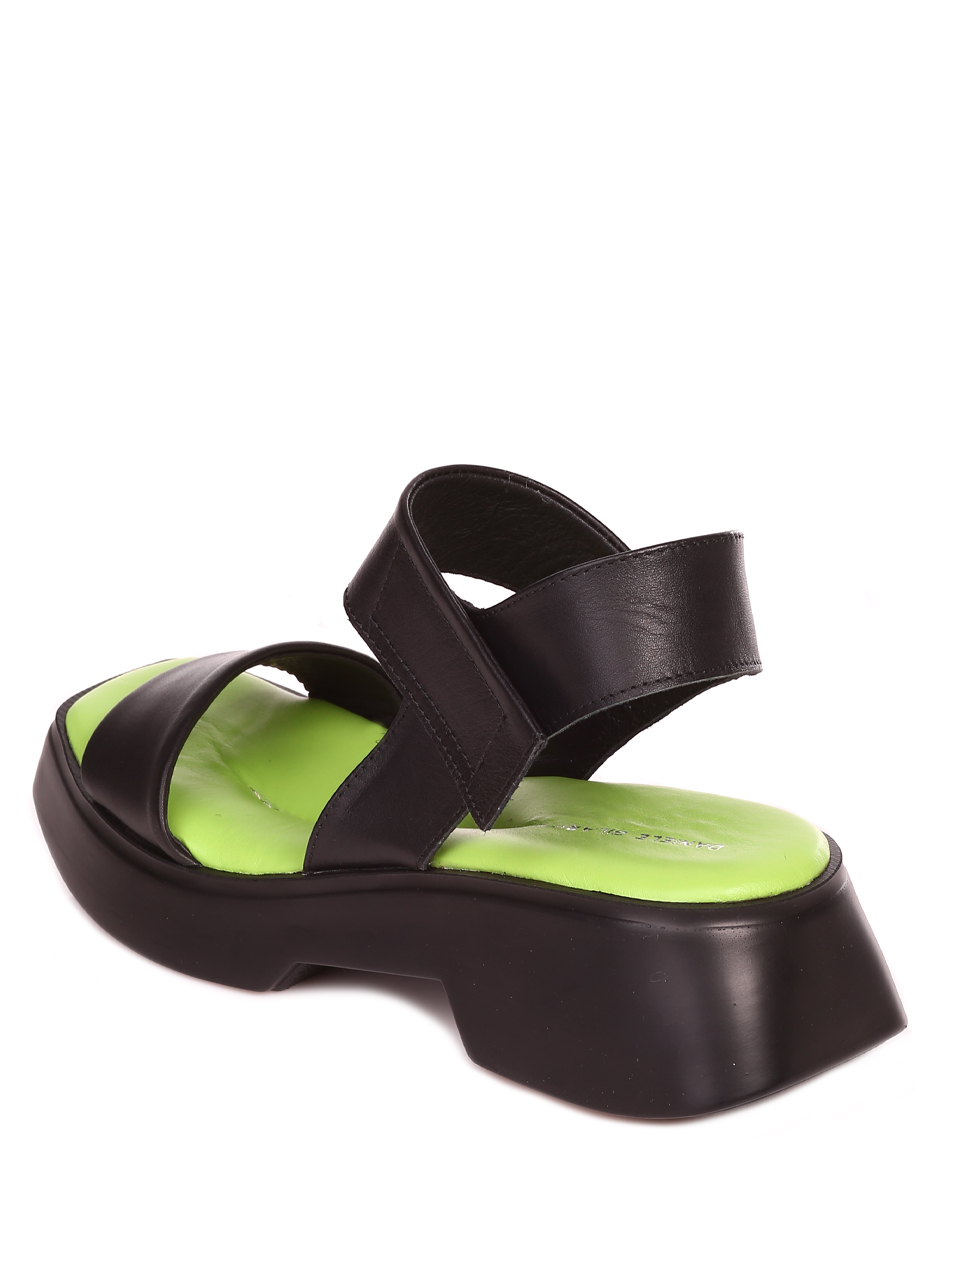 Ежедневни дамски сандали на платформа от естествена кожа 4AT-23285 black